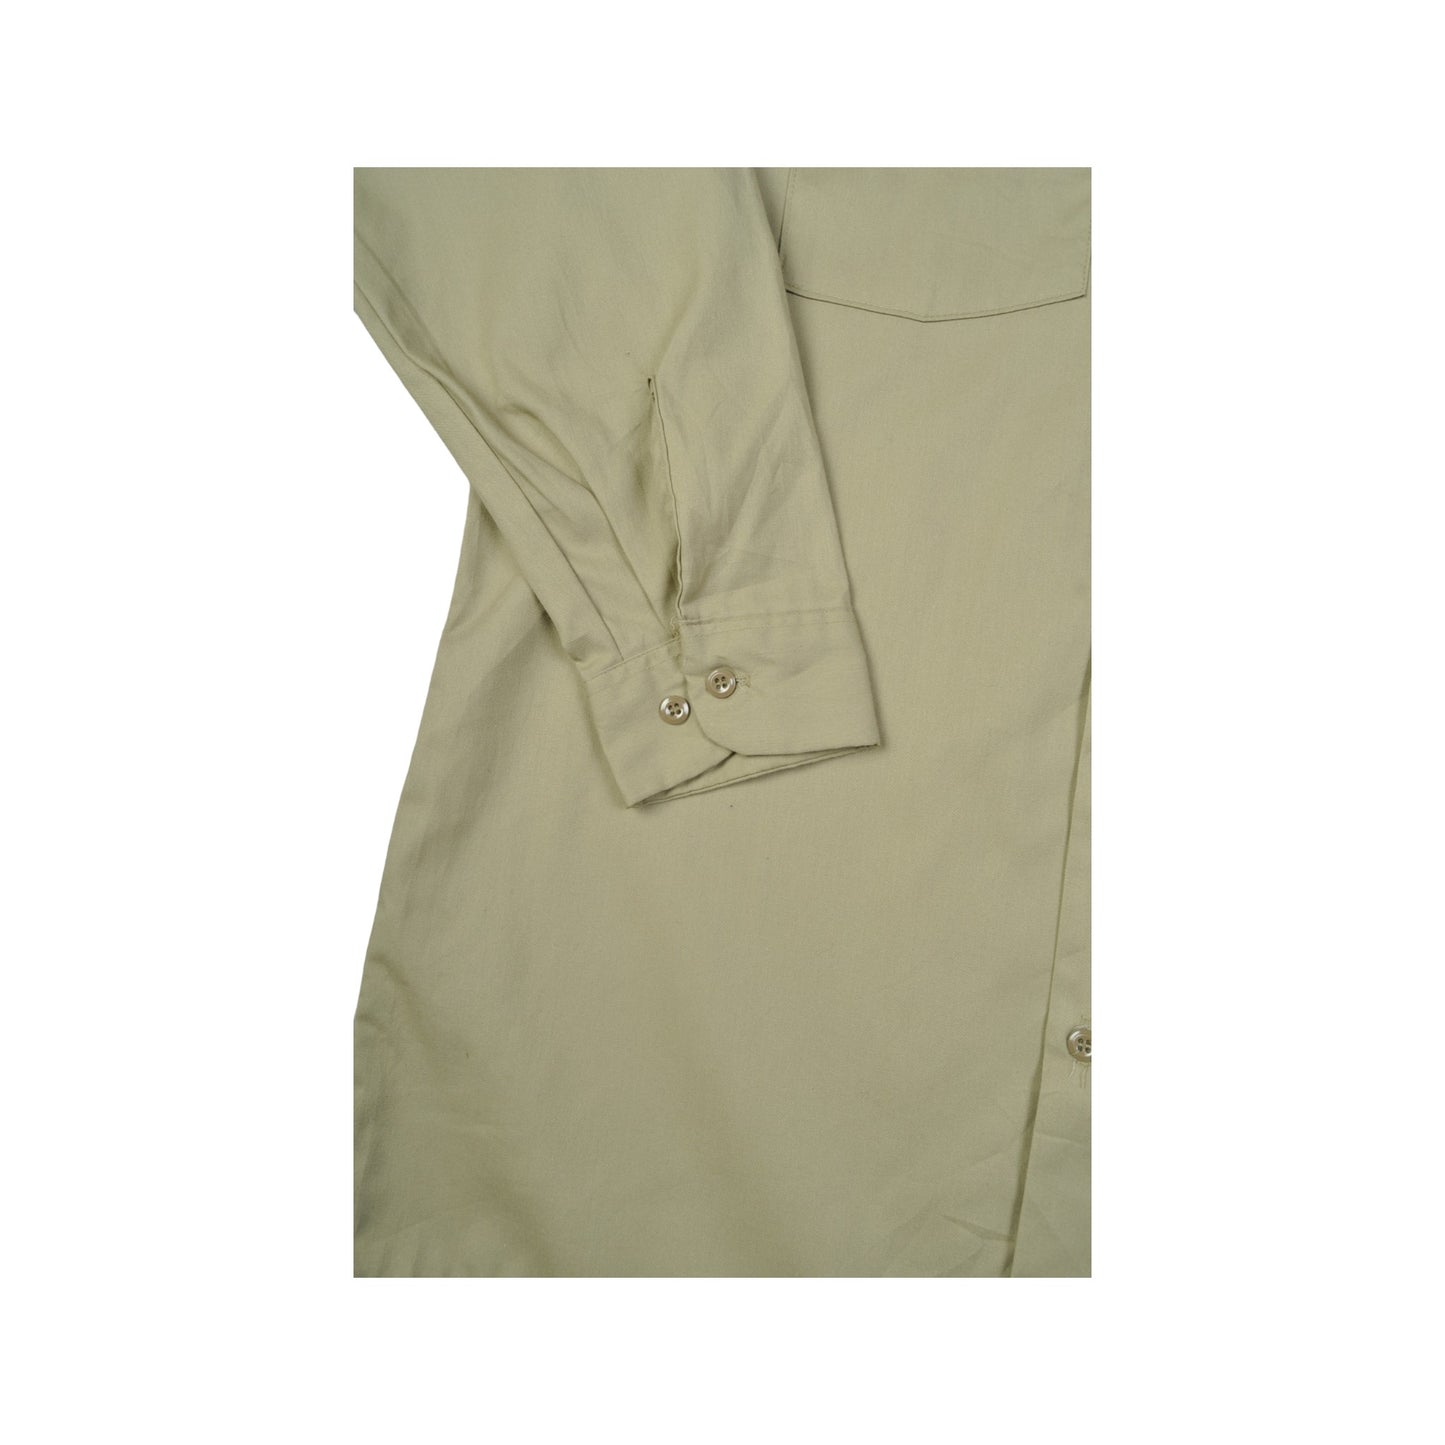 Vintage Dickies Workwear Shirt Long Sleeve Beige Large